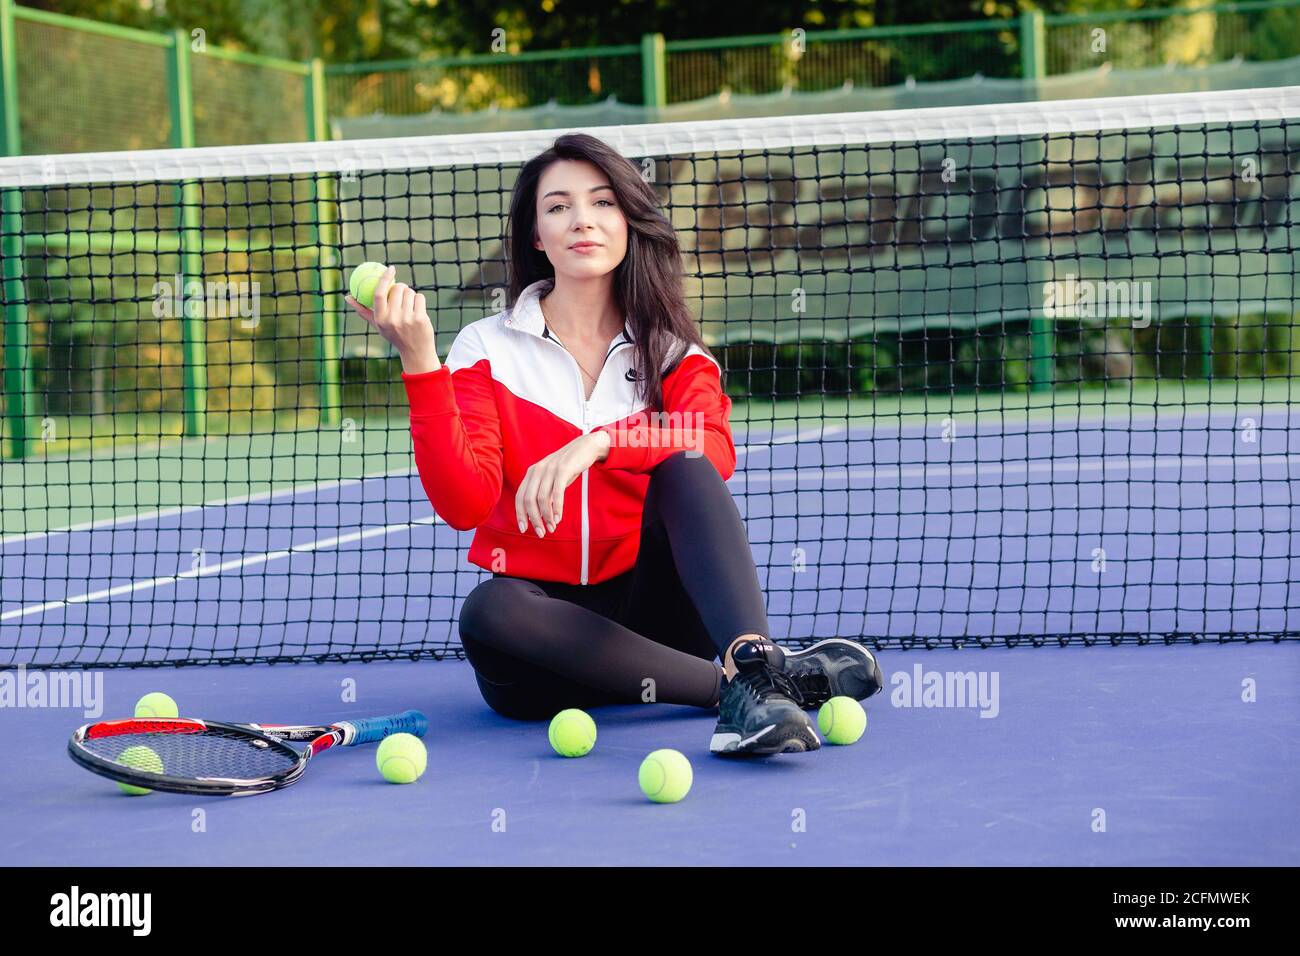 Joven bonita mujer sentada apoyada en la red de tenis, descansando  relajándose después del entrenamiento. Retrato de deportista en pista azul  de tenis. Vida sana Fotografía de stock - Alamy